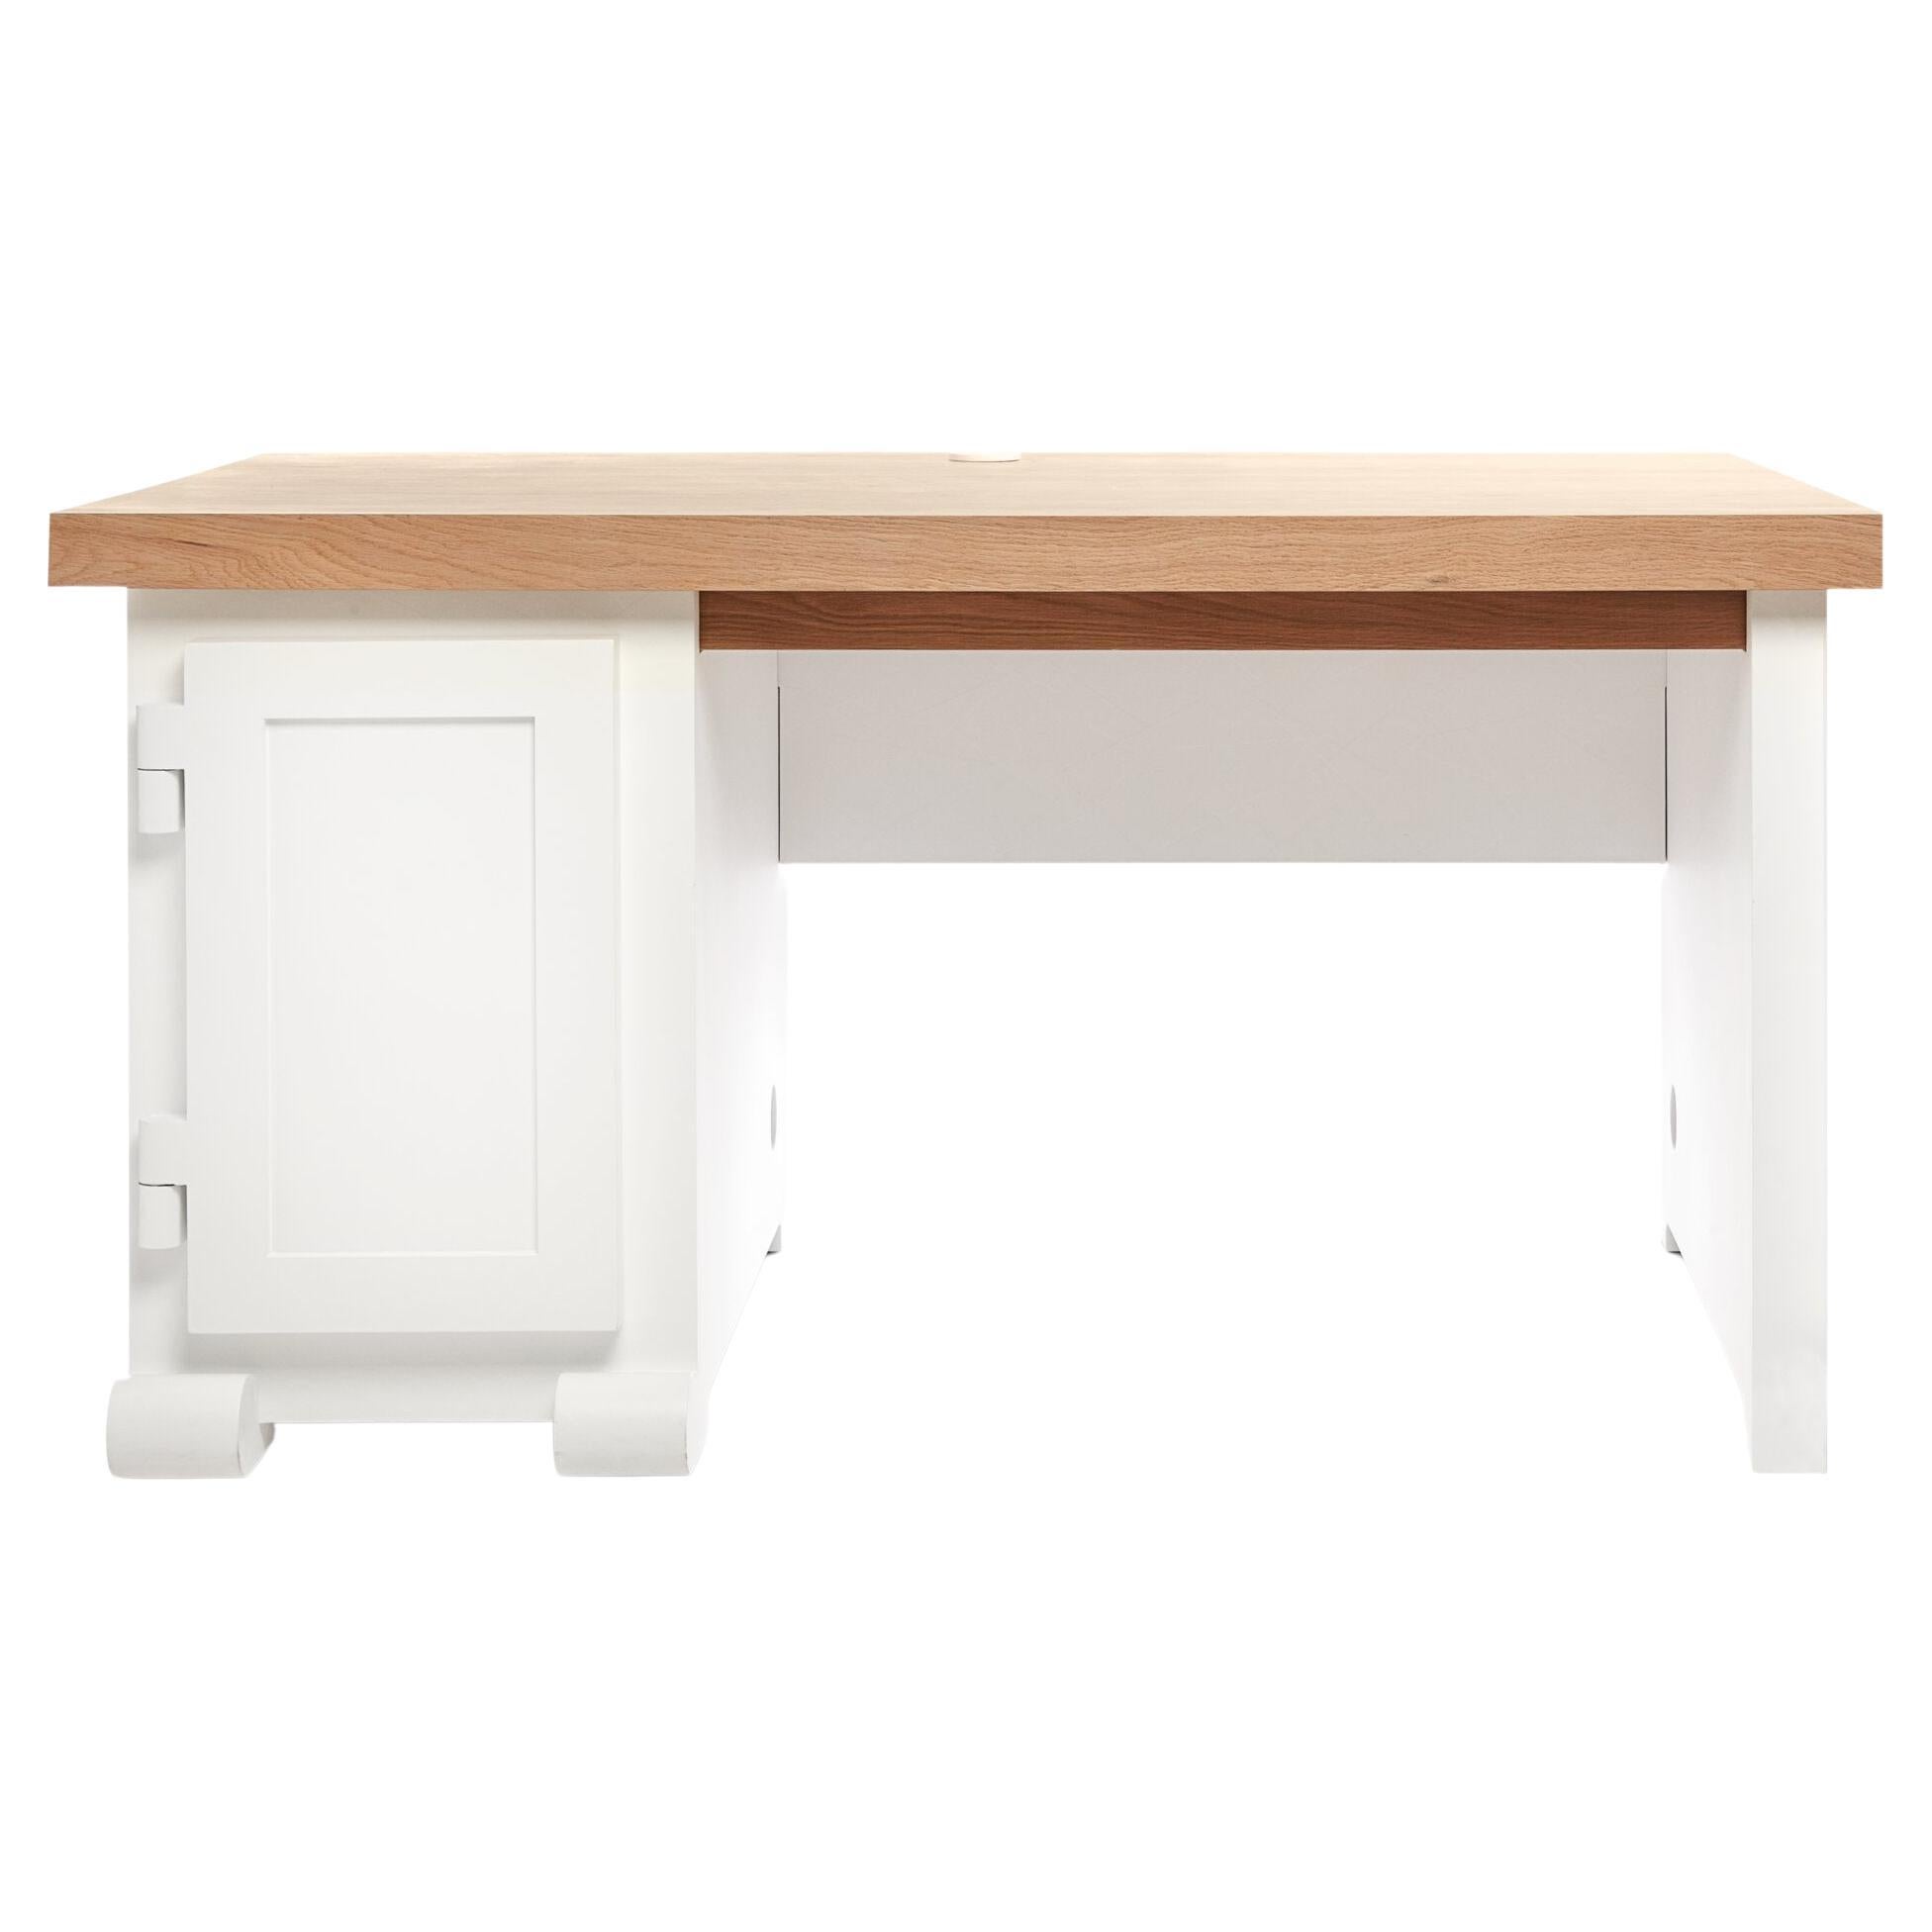 Moooi Paper LHS Desk in Wood & Cardboard with Oak Veneer Top by Studio Job For Sale